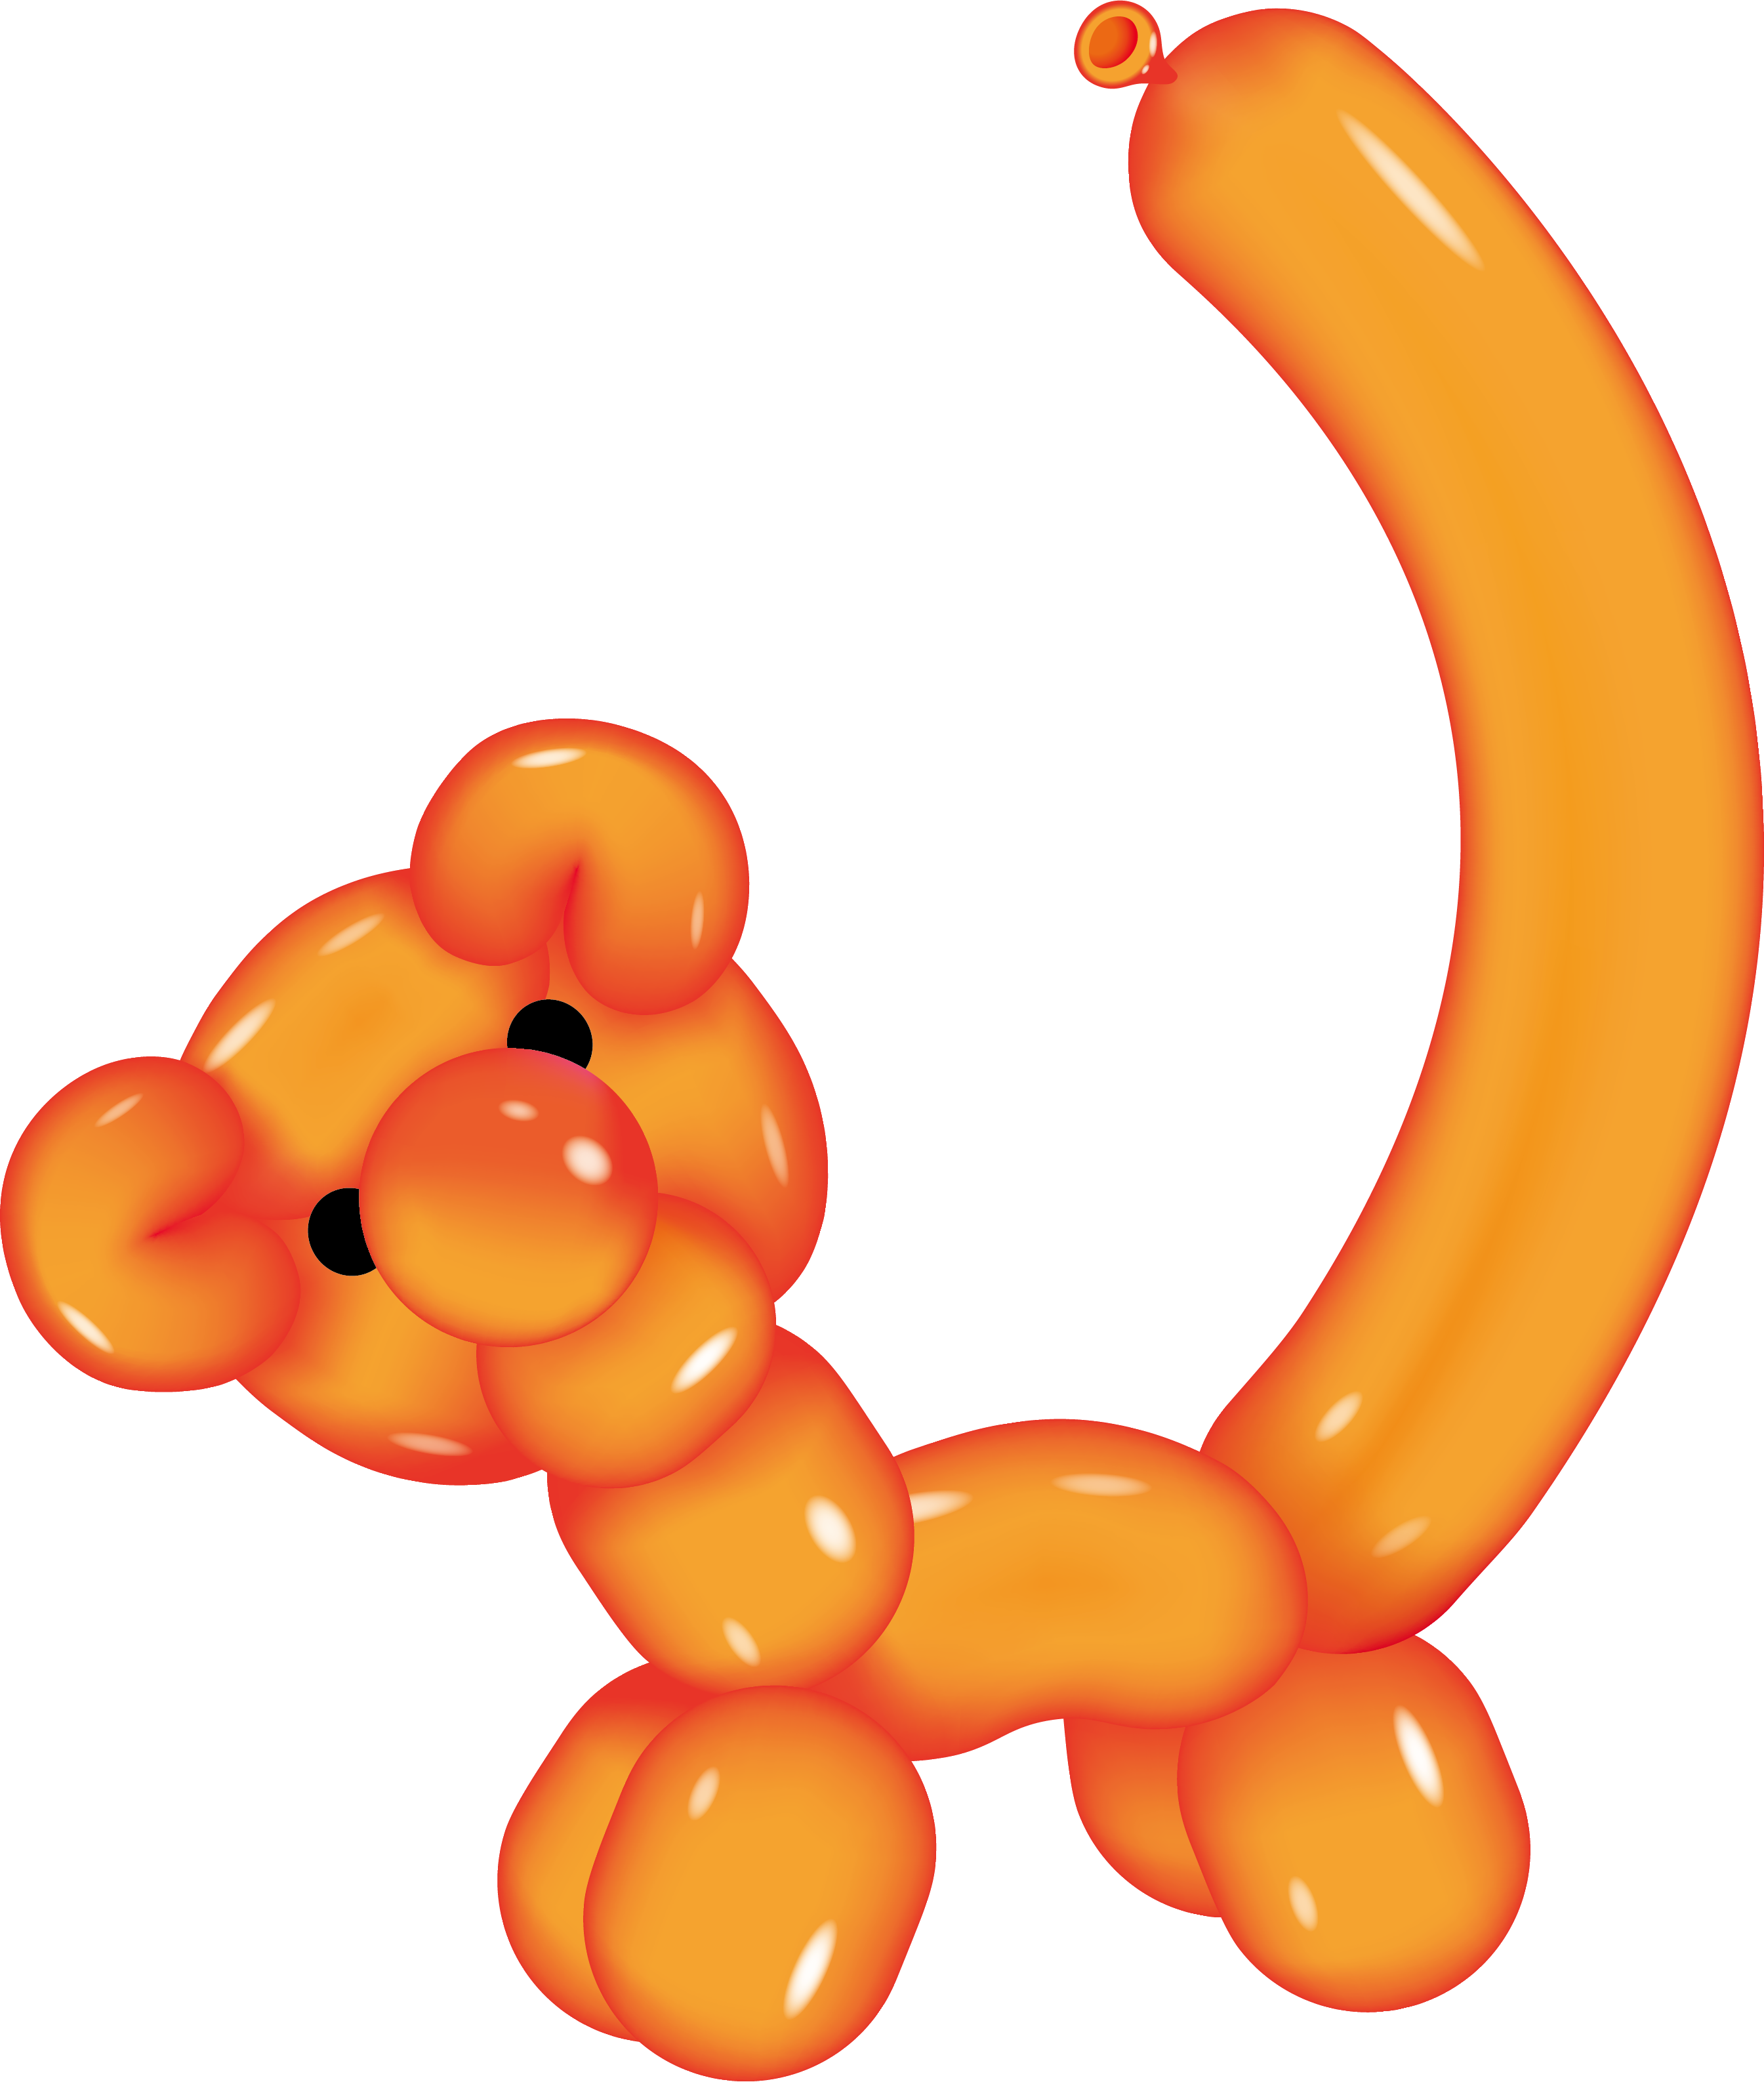 Tiger Balloon Illustration - Balloon Animal Clip Art (2689x3173)